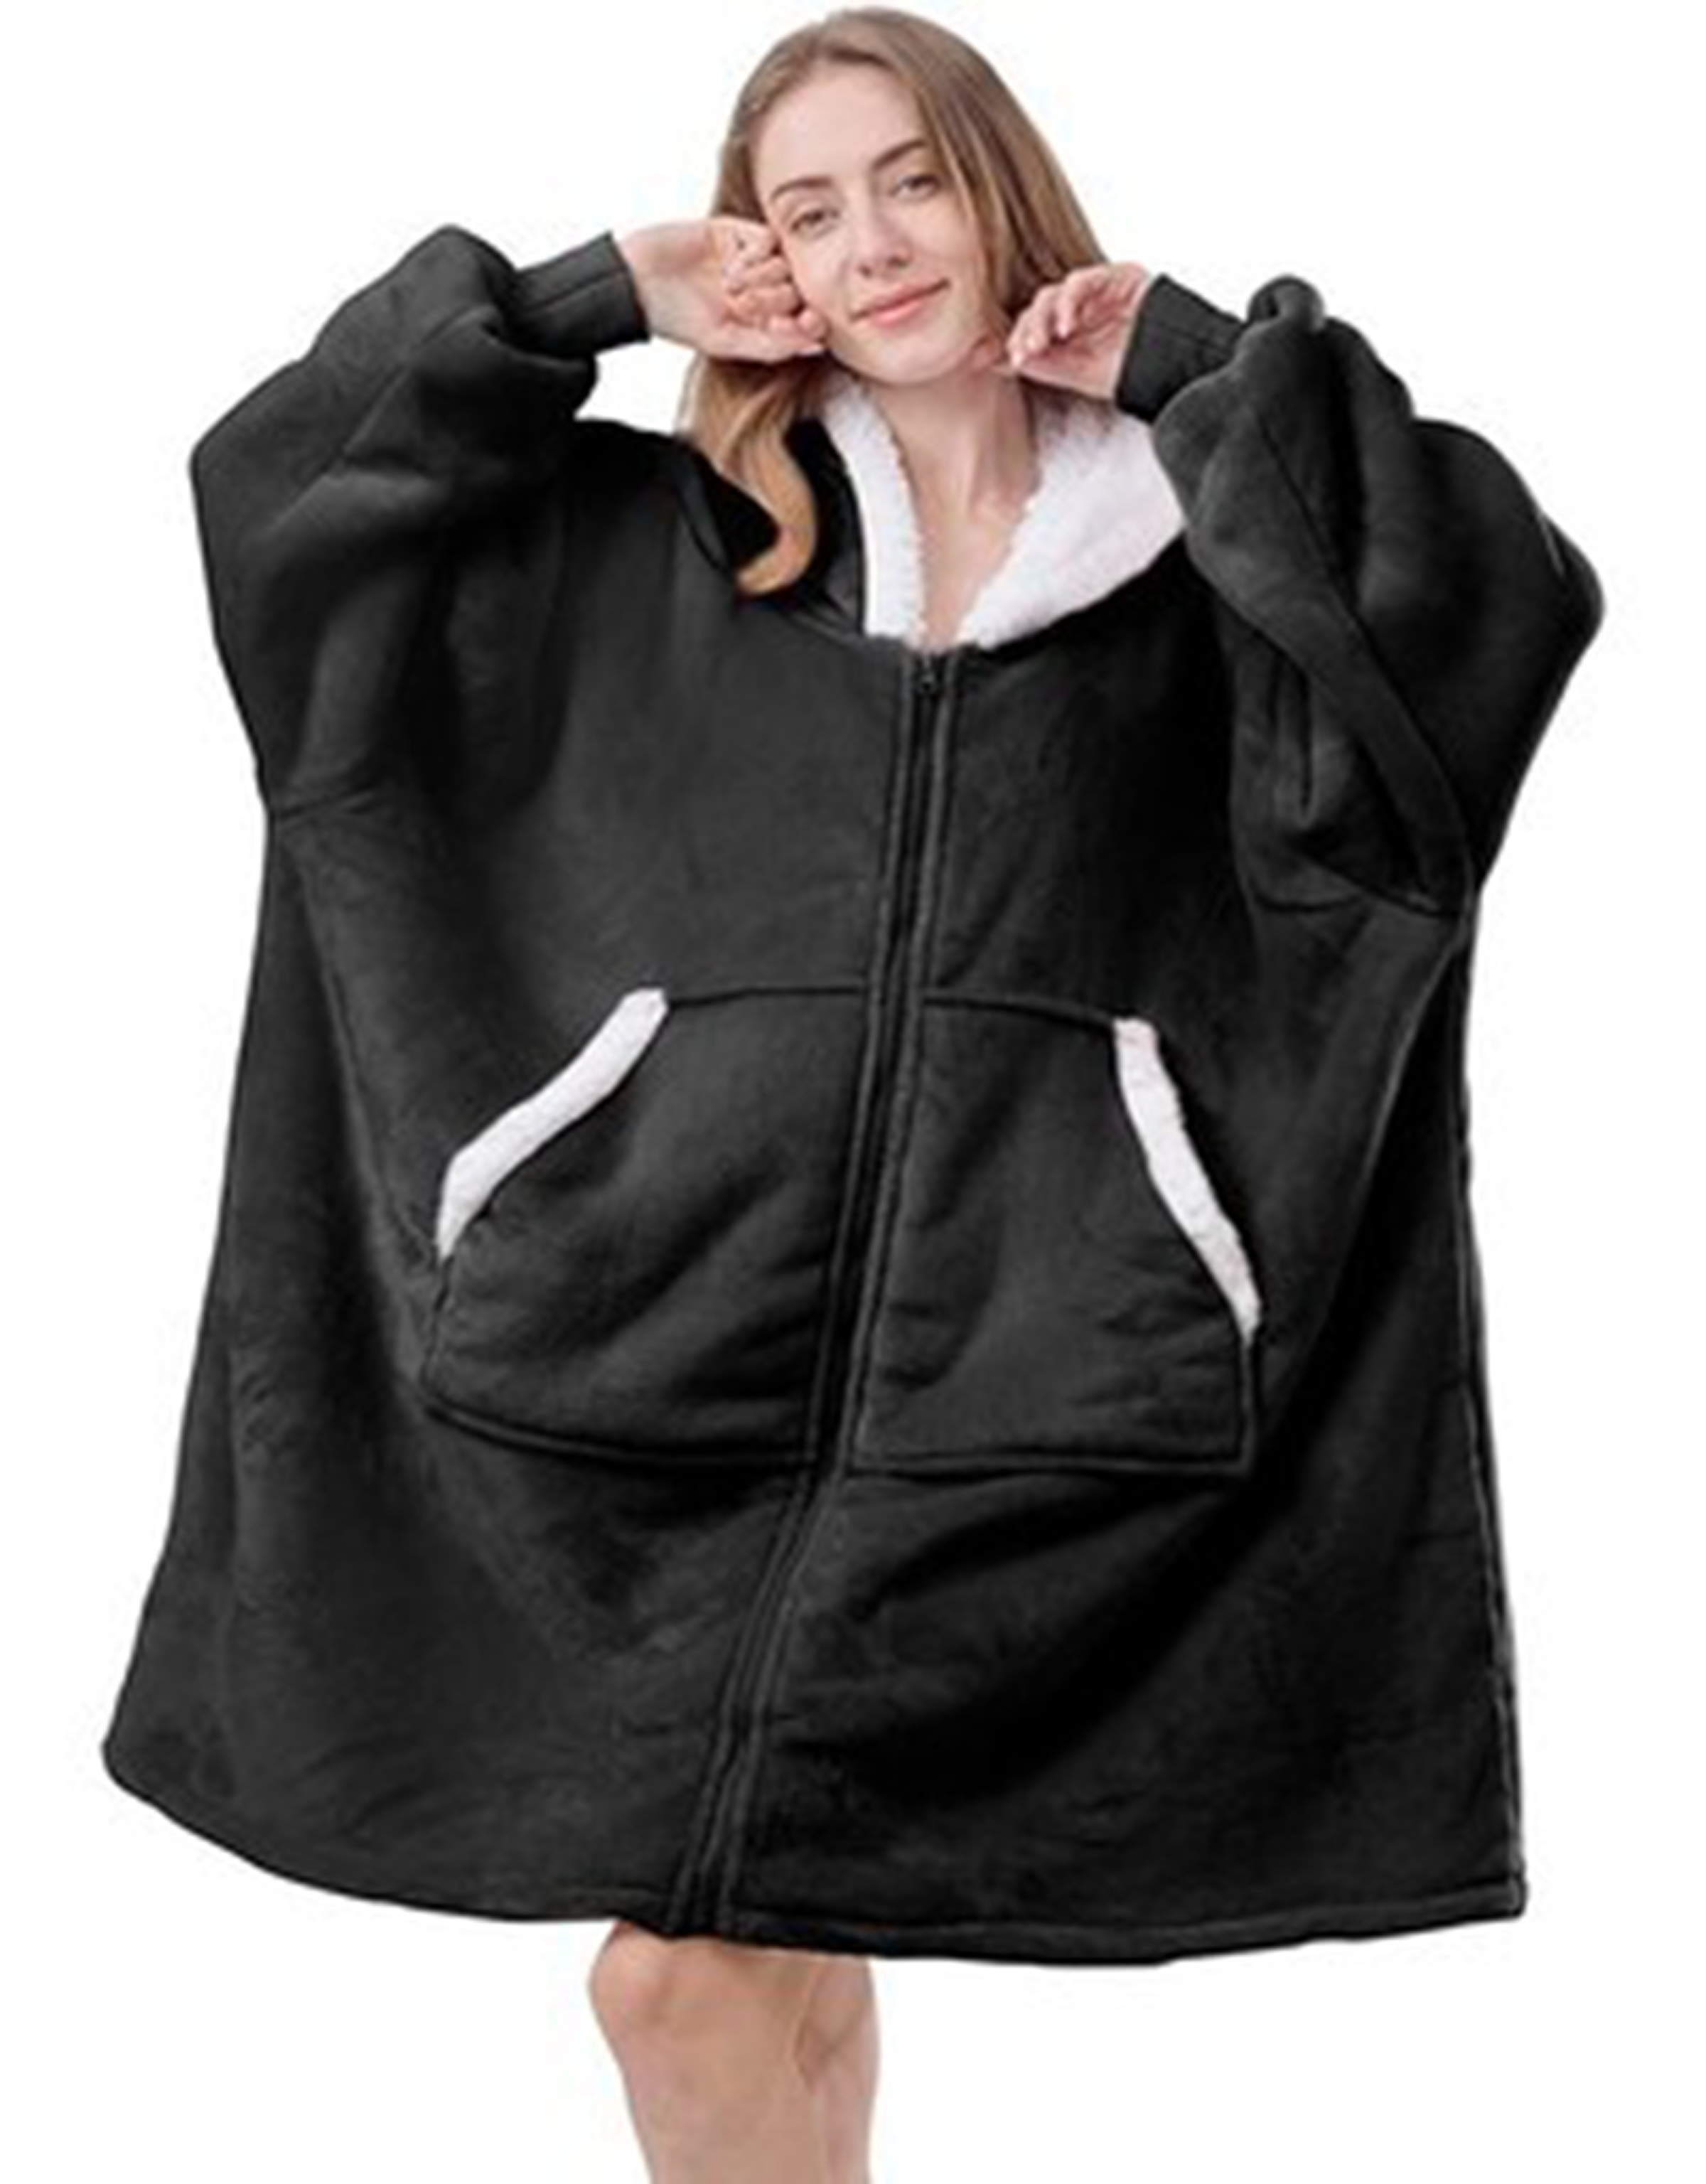 WS00234BlackWhite-blanketjumper-jacket